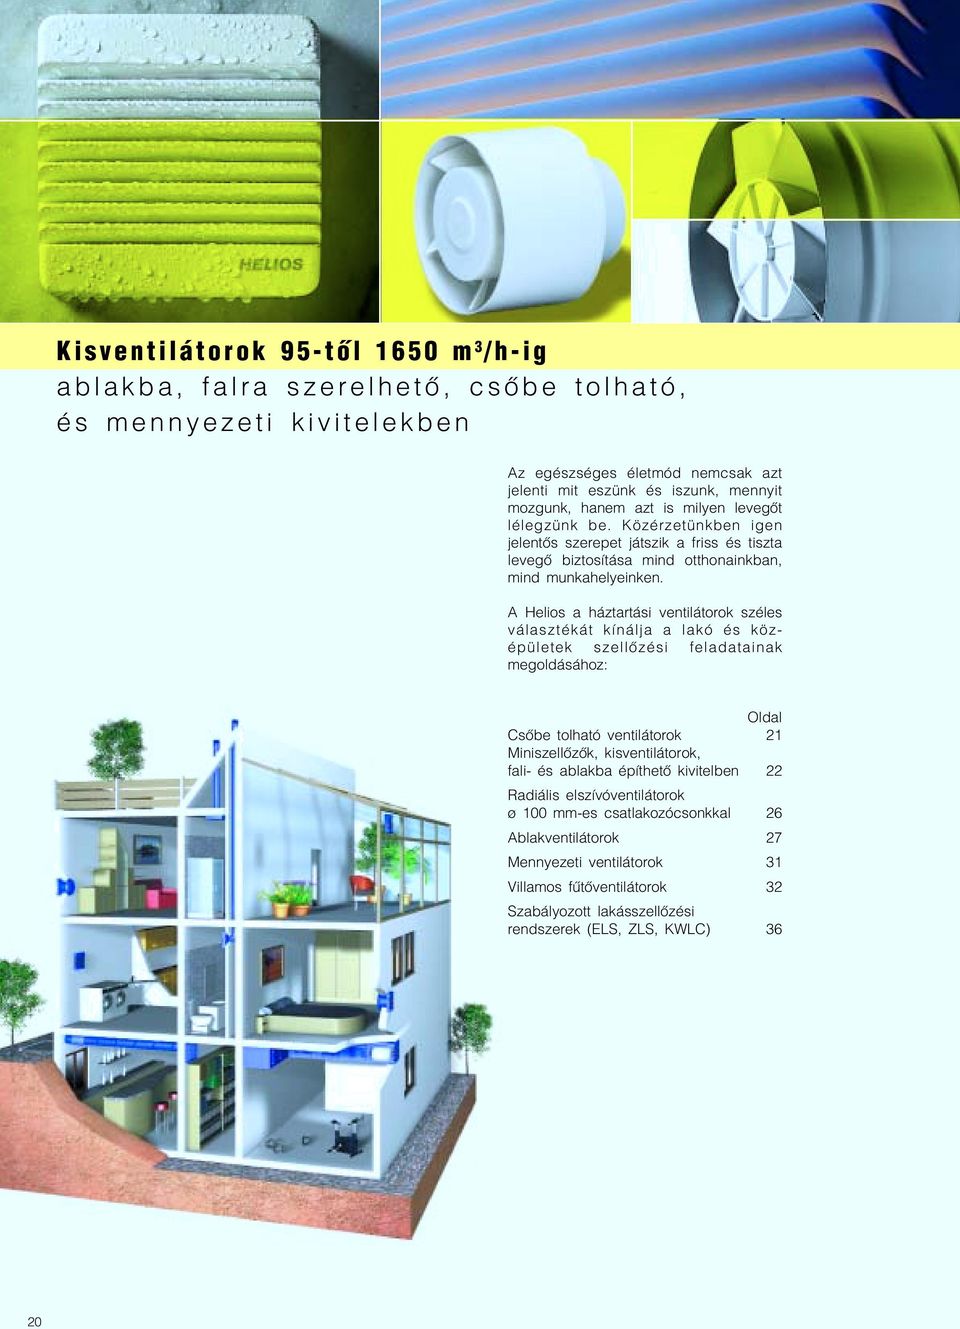 A Helios a háztartási ventilátorok széles választékát kínálja a lakó és köz épületek szellőzési feladatainak megoldásához: Oldal Csőbe tolható ventilátorok 21 Miniszellőzők, kisventilátorok, fali